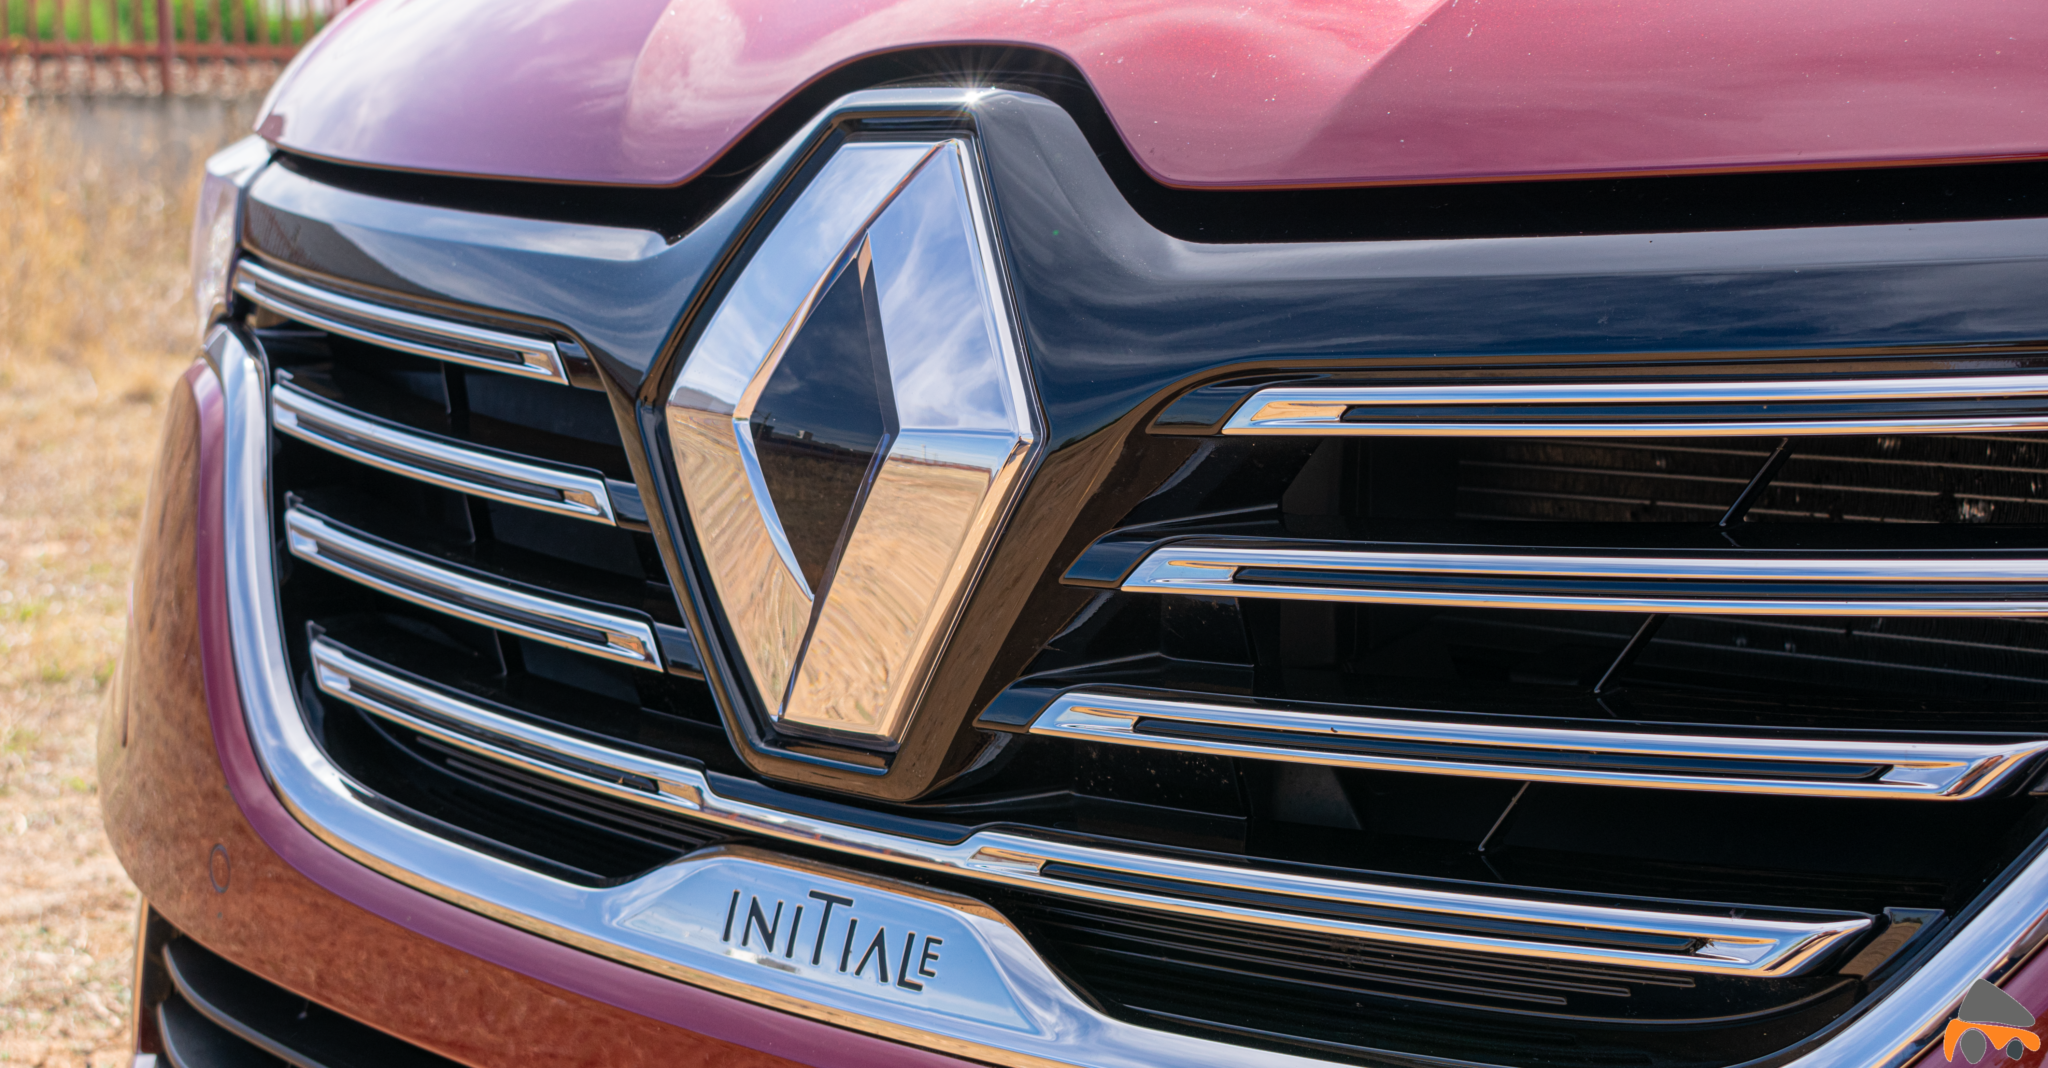 Logo Initiale frontal Renault Talisman gasolina - Renault Talisman: Una berlina rápida, deportiva y muy cómoda